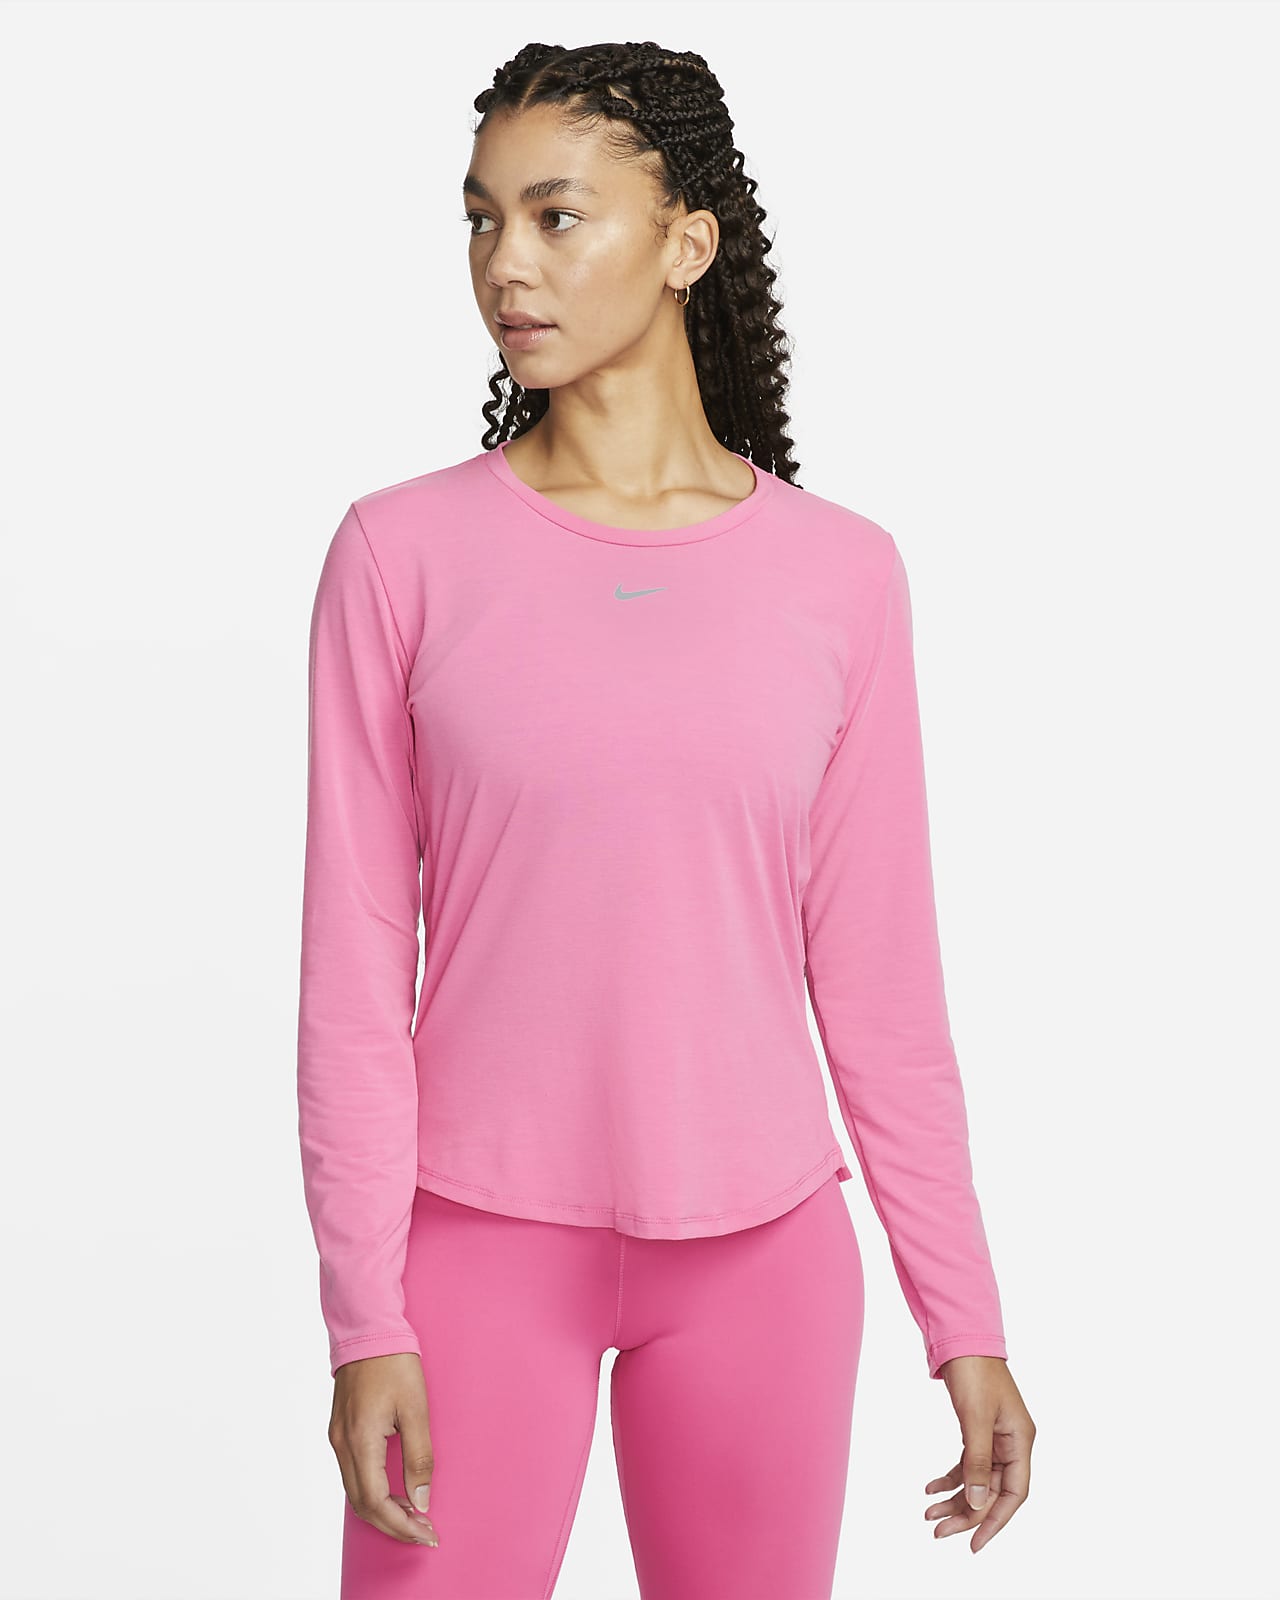 Slot Steil Beschikbaar Nike Dri-FIT UV One Luxe Women's Standard Fit Long-Sleeve Top. Nike.com